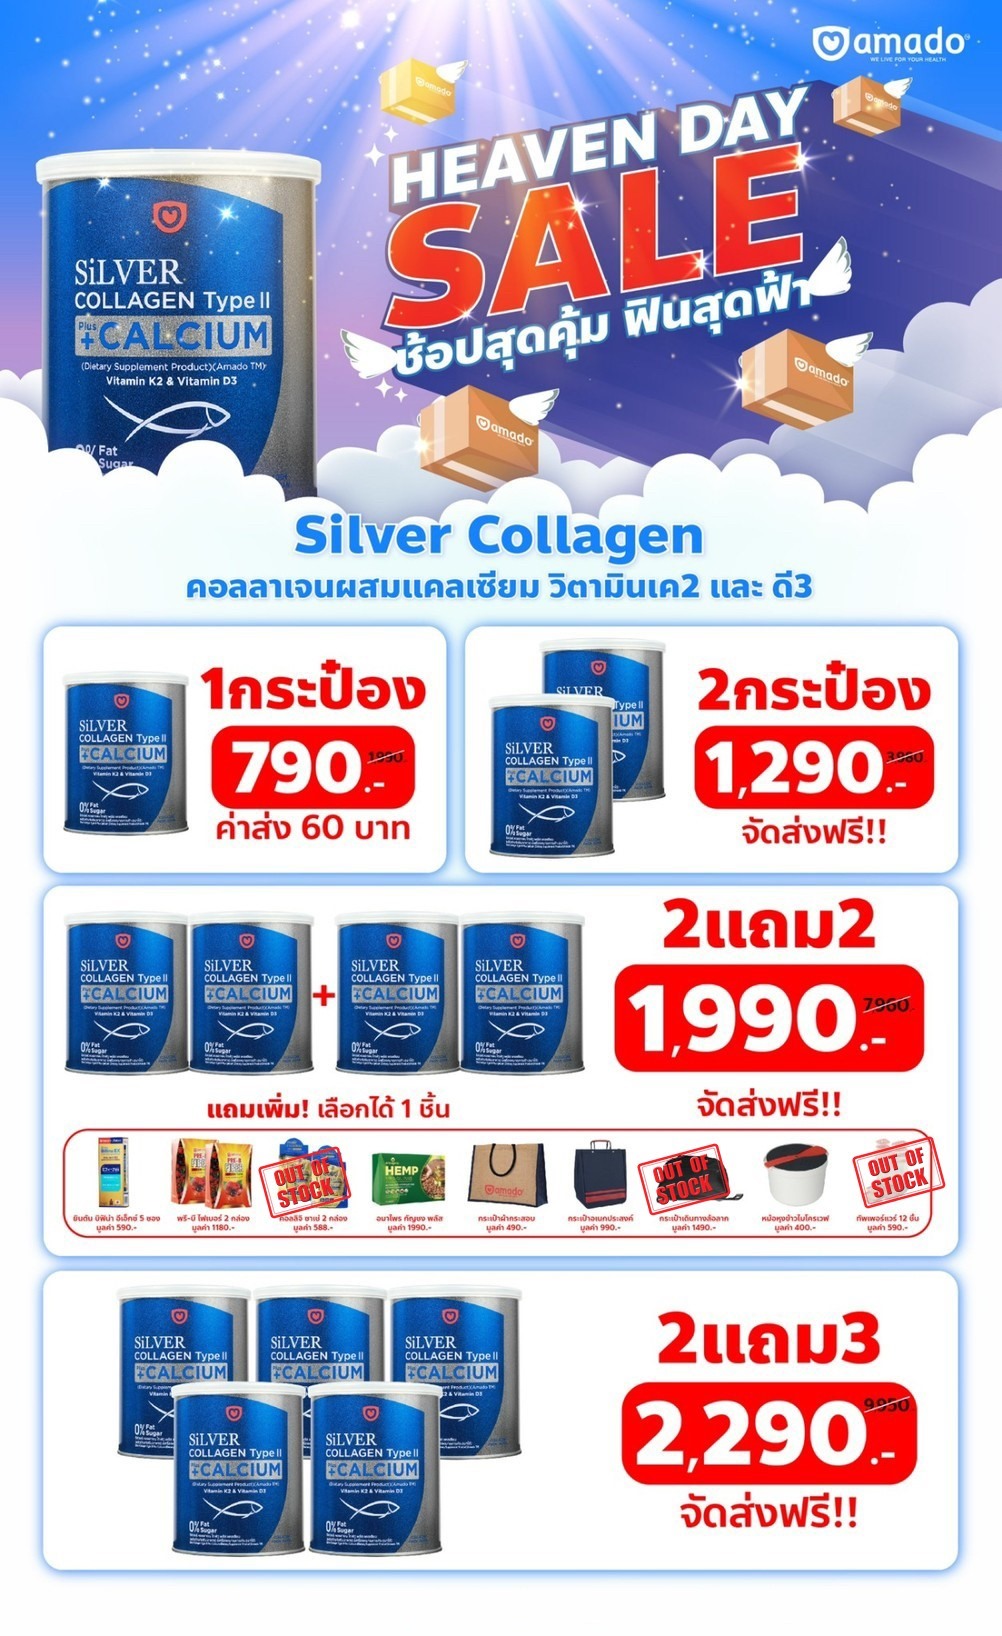 ราคา Silver uc ii collagen ที่ดีที่สุด